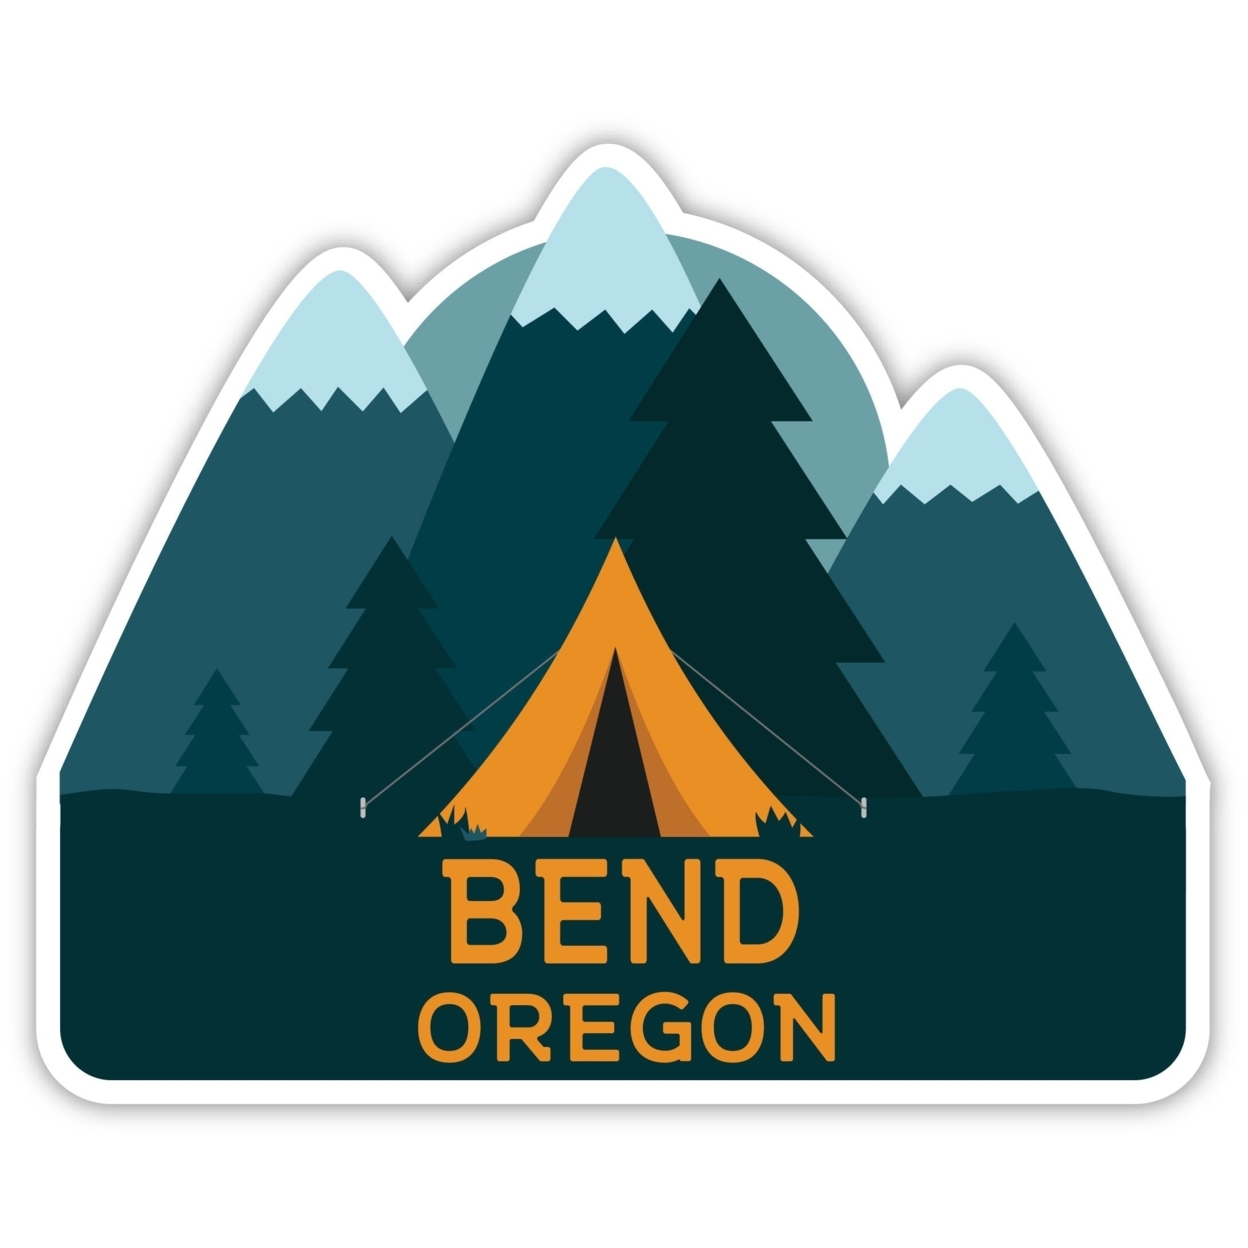 Bend Oregon Souvenir Decorative Stickers (Choose Theme And Size) - Single Unit, 12-Inch, Tent